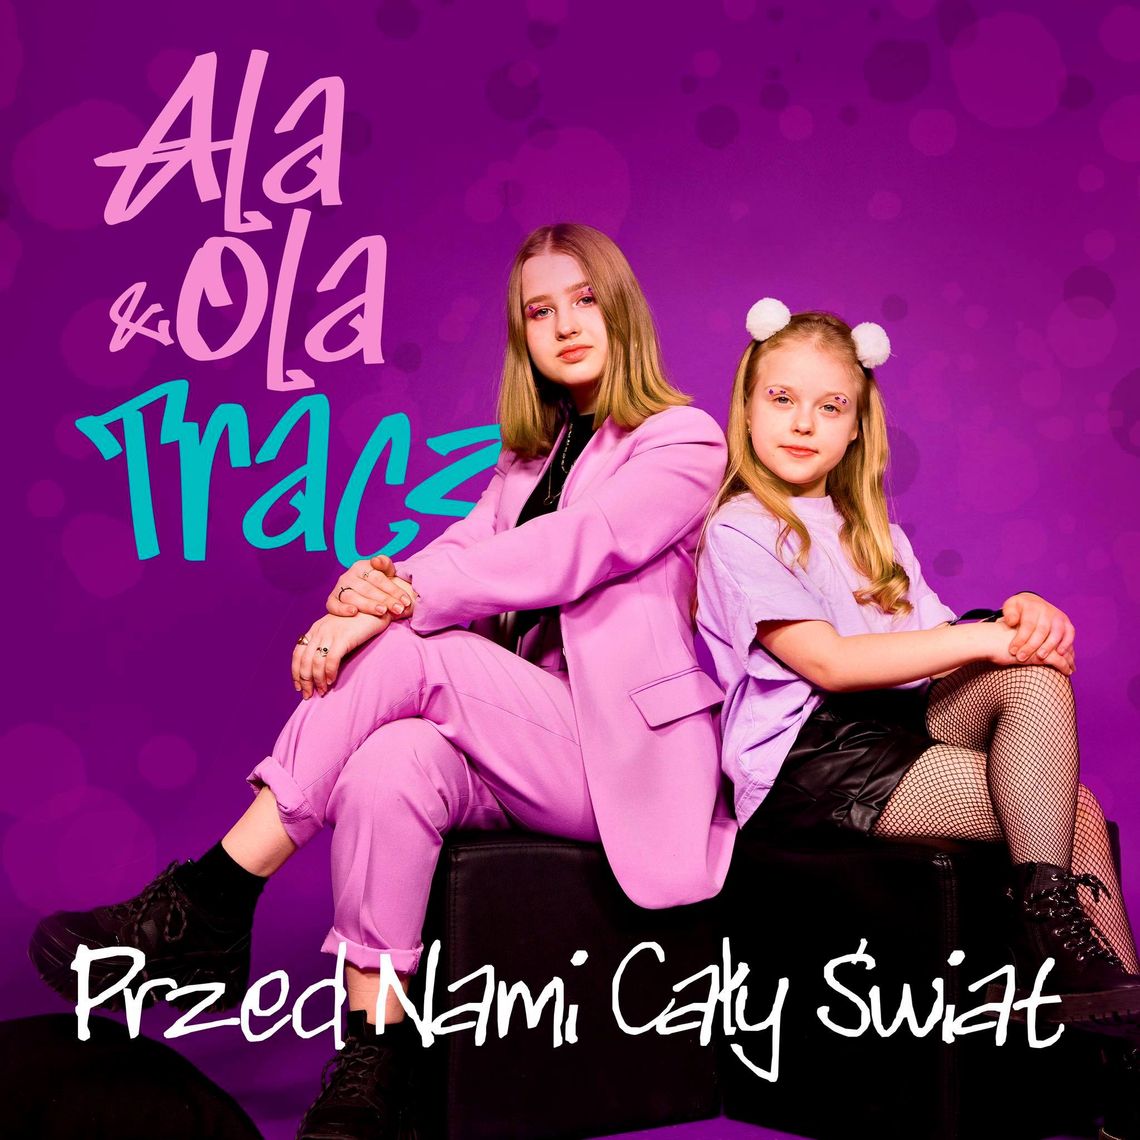 Ala i Ola Tracz z premierowym klipem do piosenki "Przed nami cały świat"